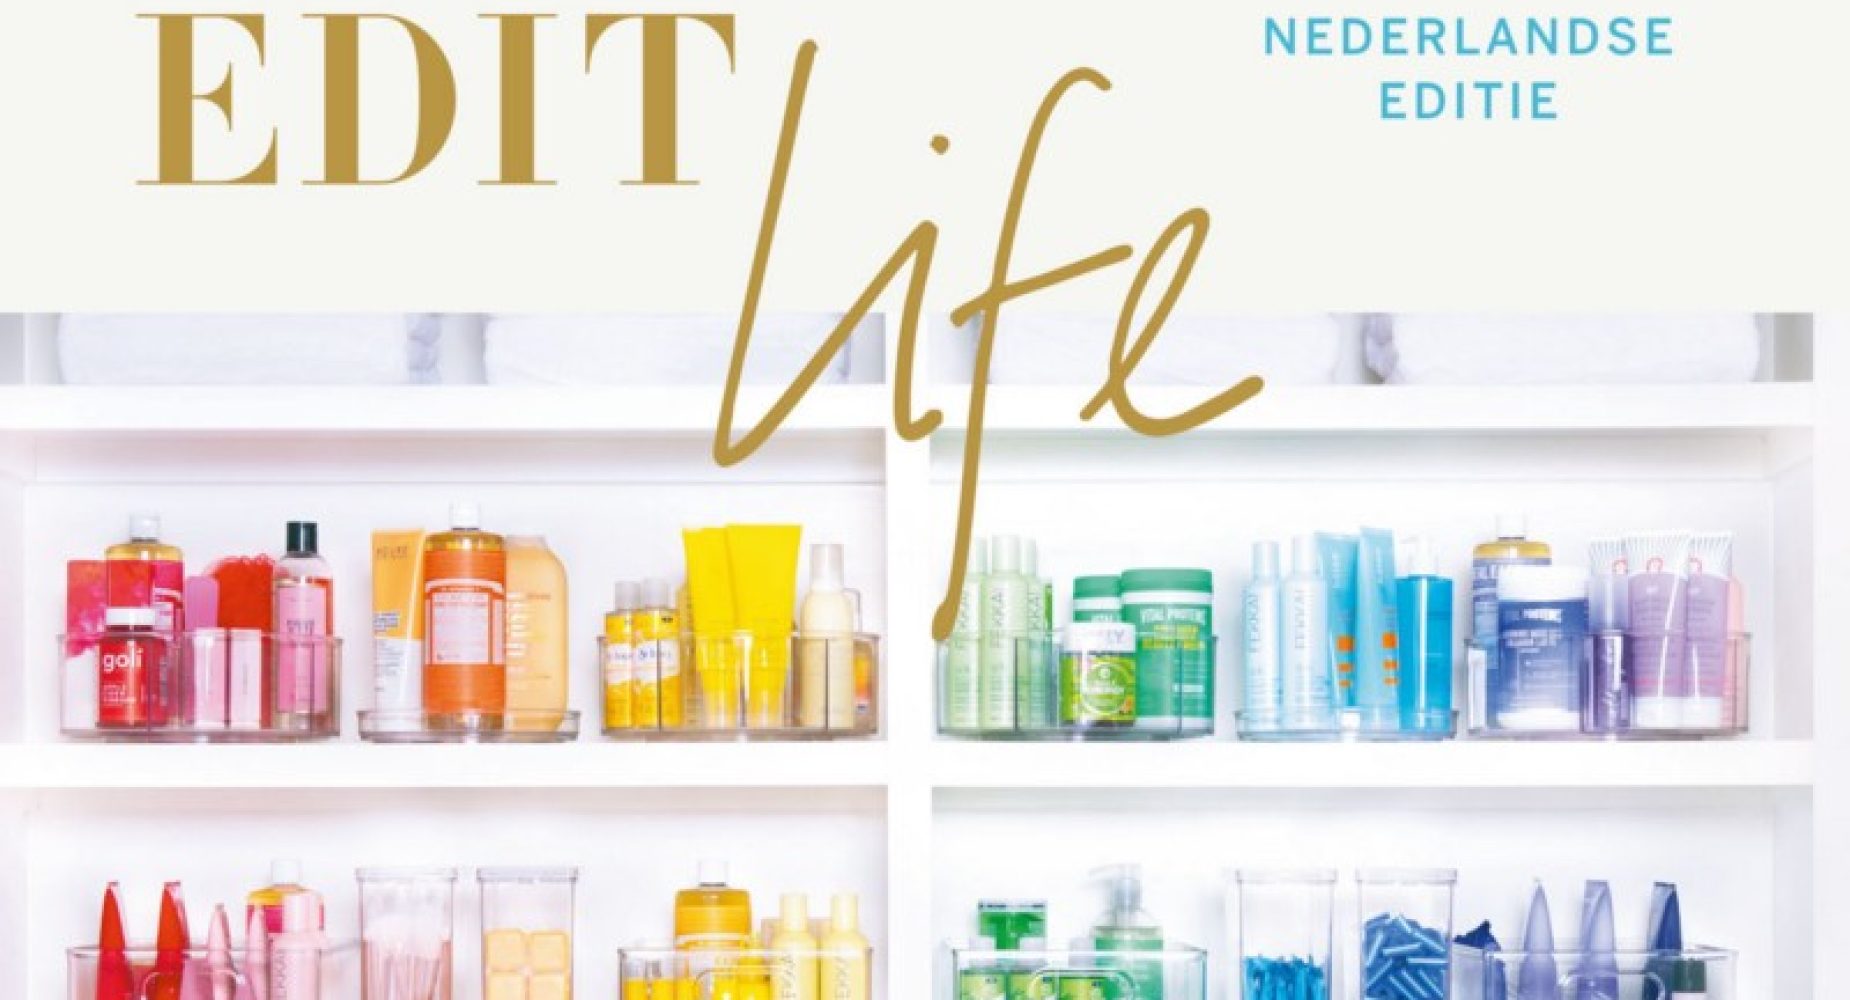 Boekcover The Home Edit Life, van de gelijknamige Netflix-serie met opruimgoeroes Clea Shearer en Joanna Teplin.